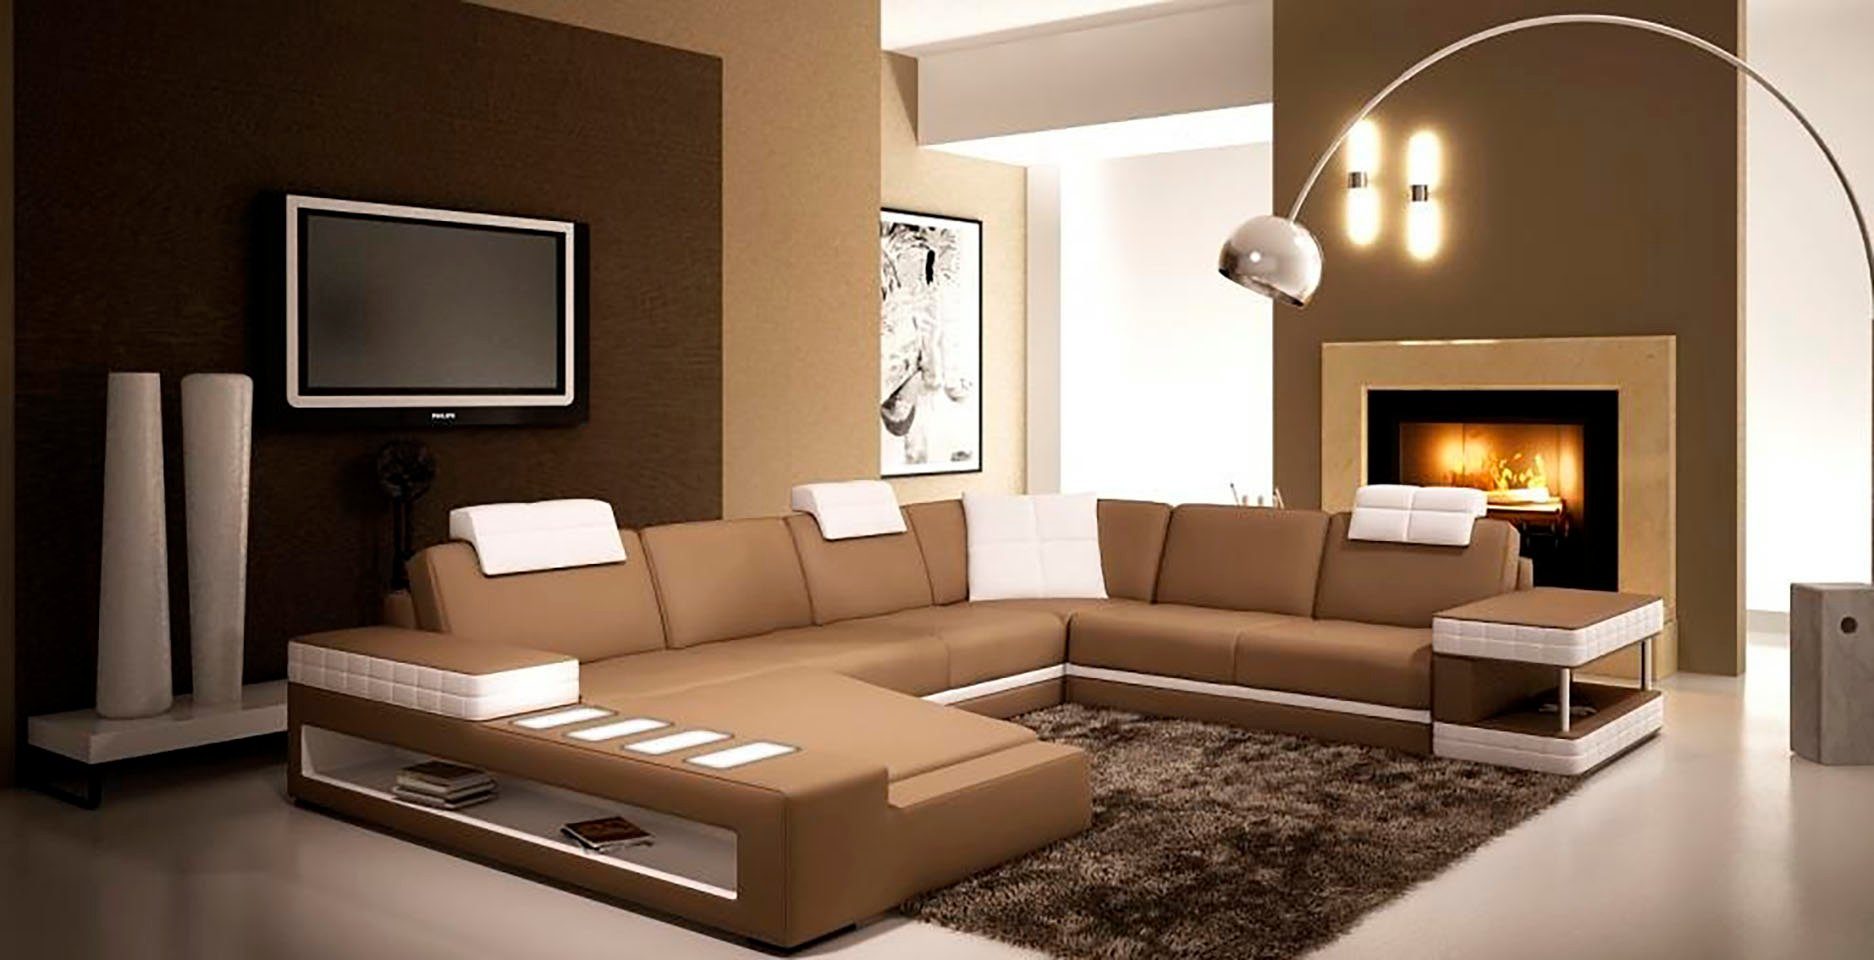 Ecksofa Modern in JVmoebel Neu, schwarz Premium Designer Eck xxl Ecksofa Europe Couch Made